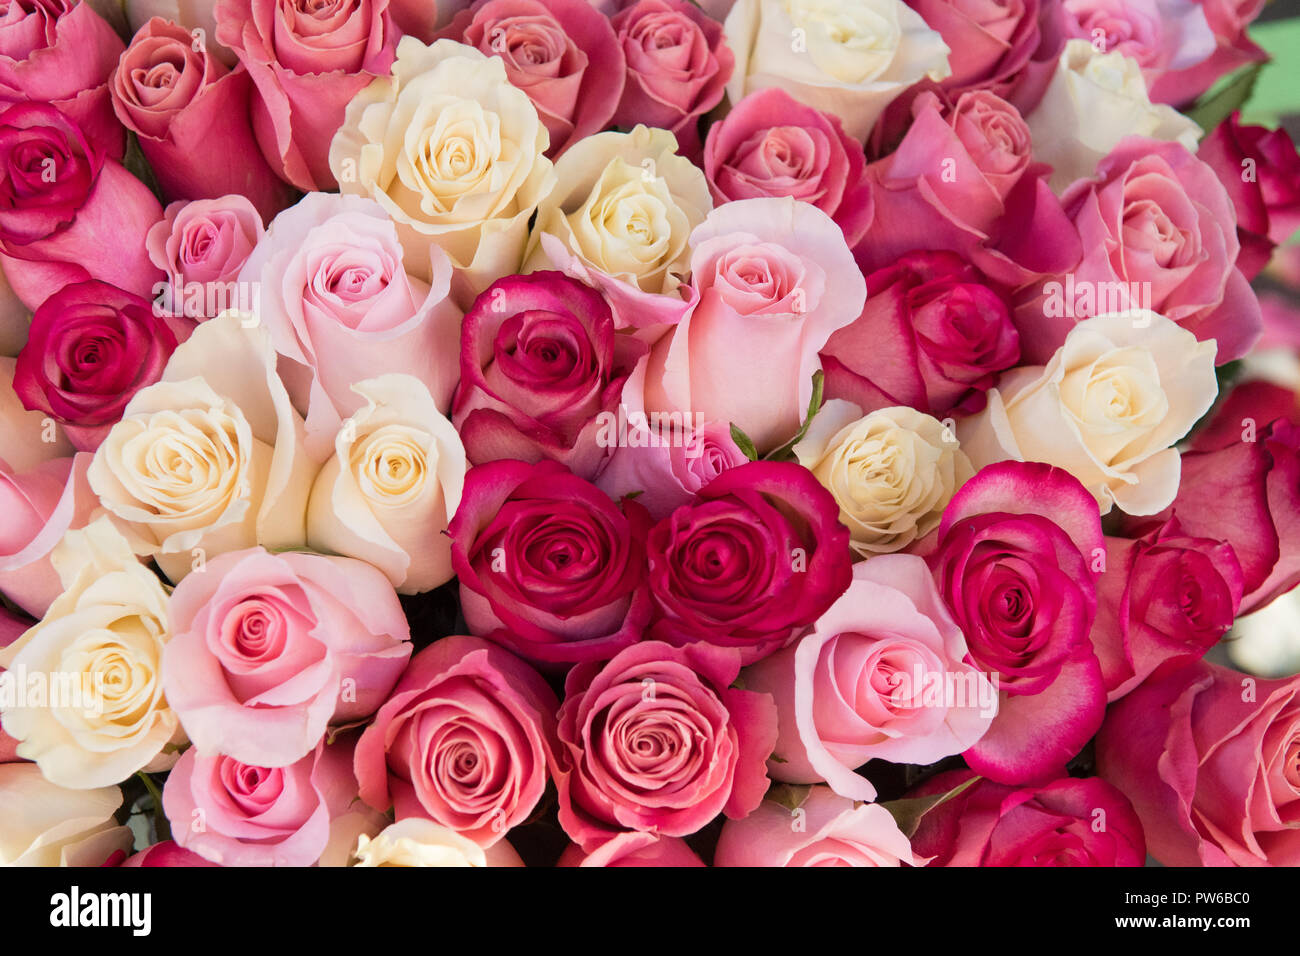 Rosen - rosa- und Cremefarbenen rose Hintergrund Stockfotografie - Alamy